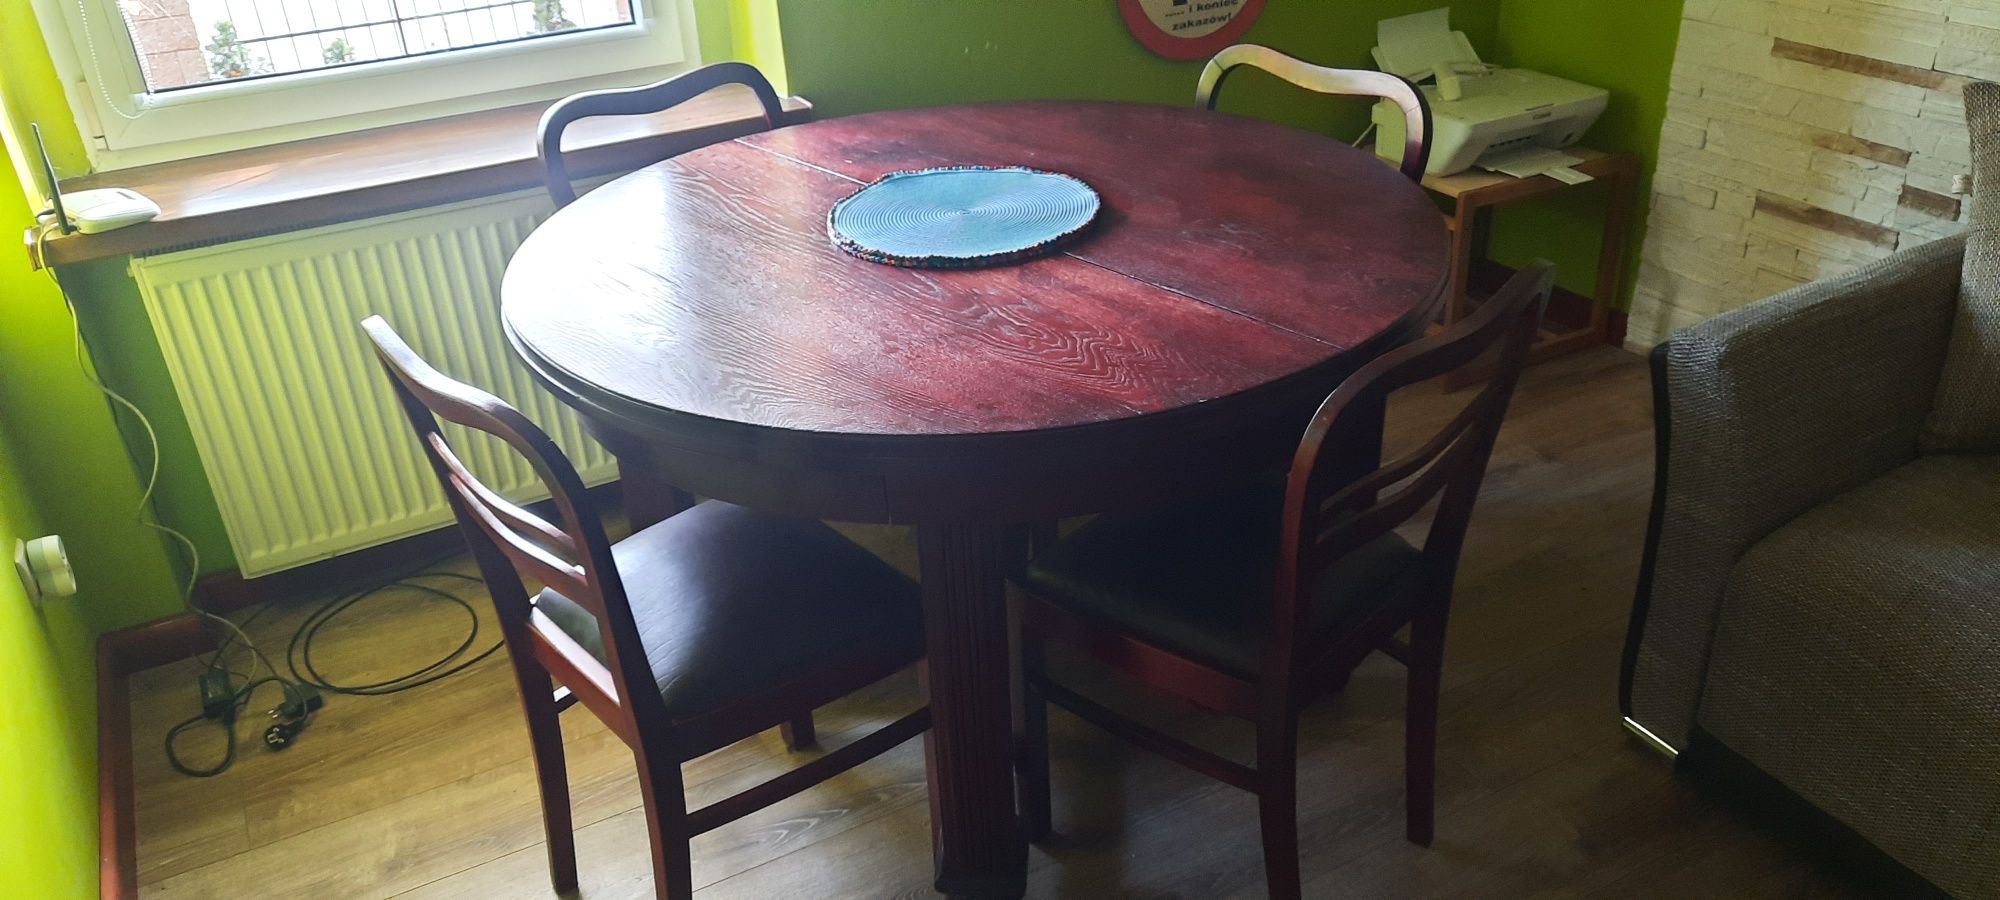 Kredens  i stół  z krzesłami dębowy antyk z lat 20  po  renowacji